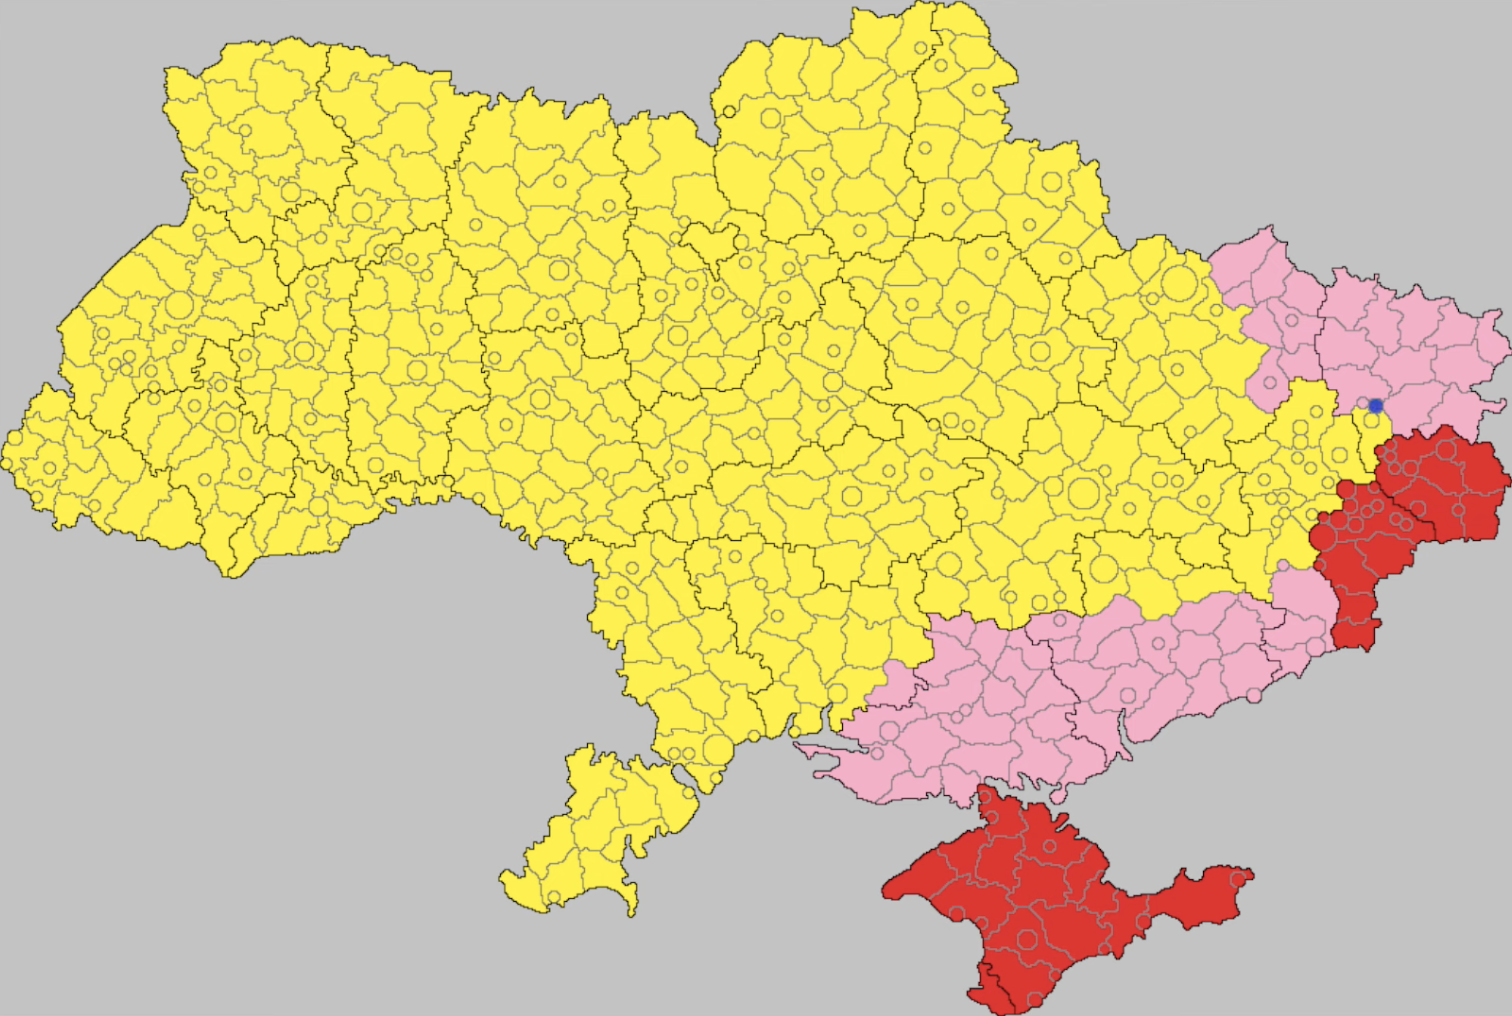 Украинская республика